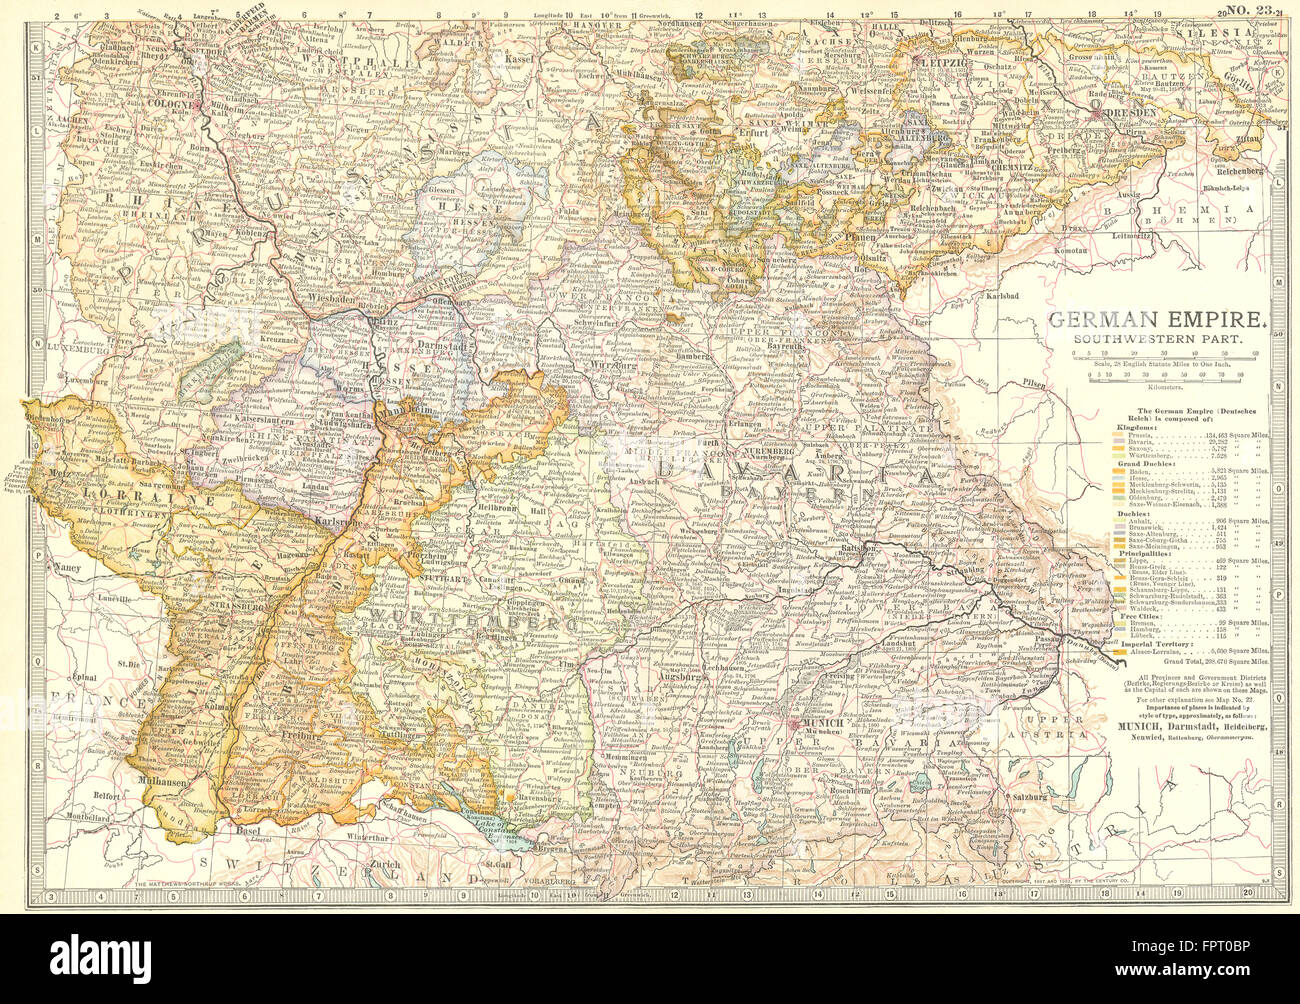 Alemania: Imperio Alemán, SW, 1903 mapa antiguo Foto de stock